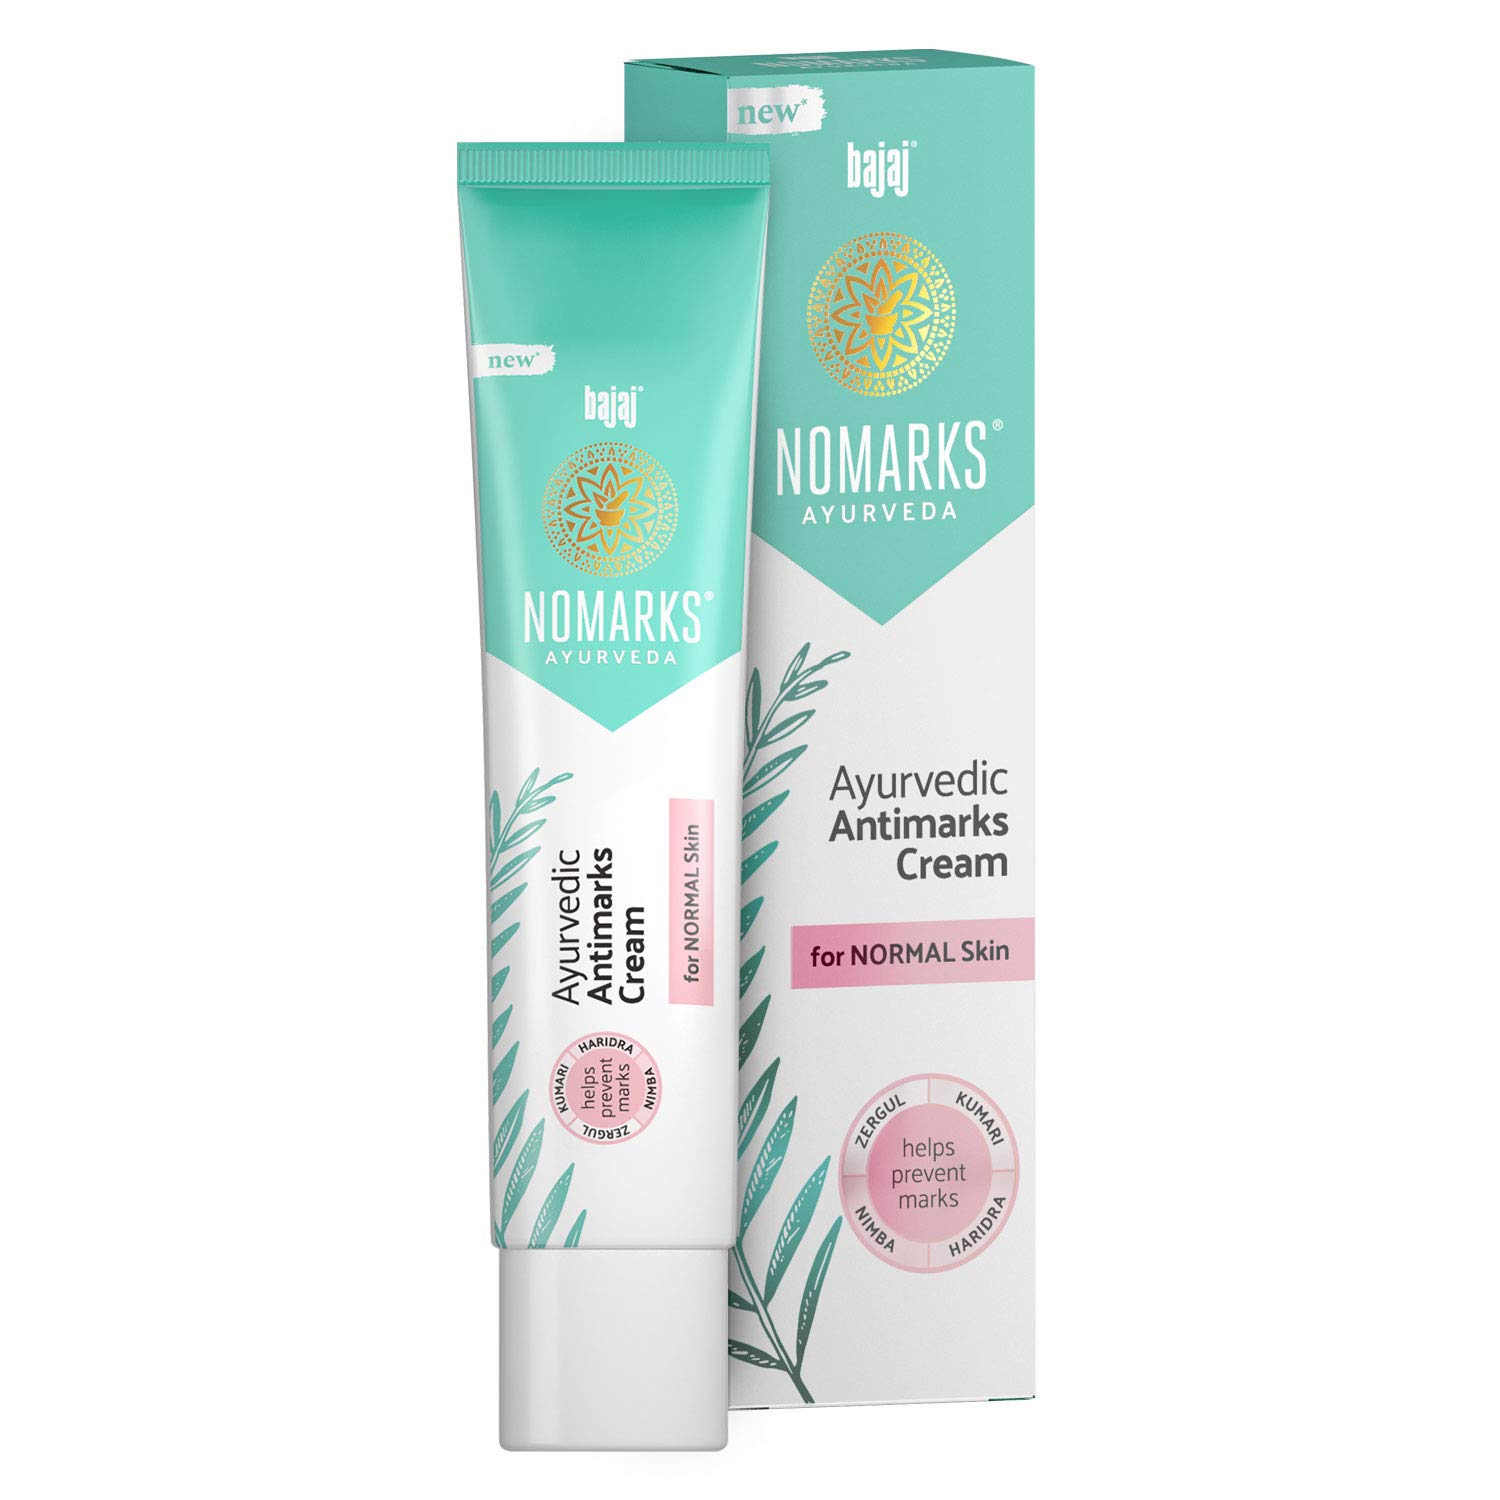 Bajaj Nomarks Ayurvedic Antimarks Cream for Normal Skin, 25g (Pink Cream) 